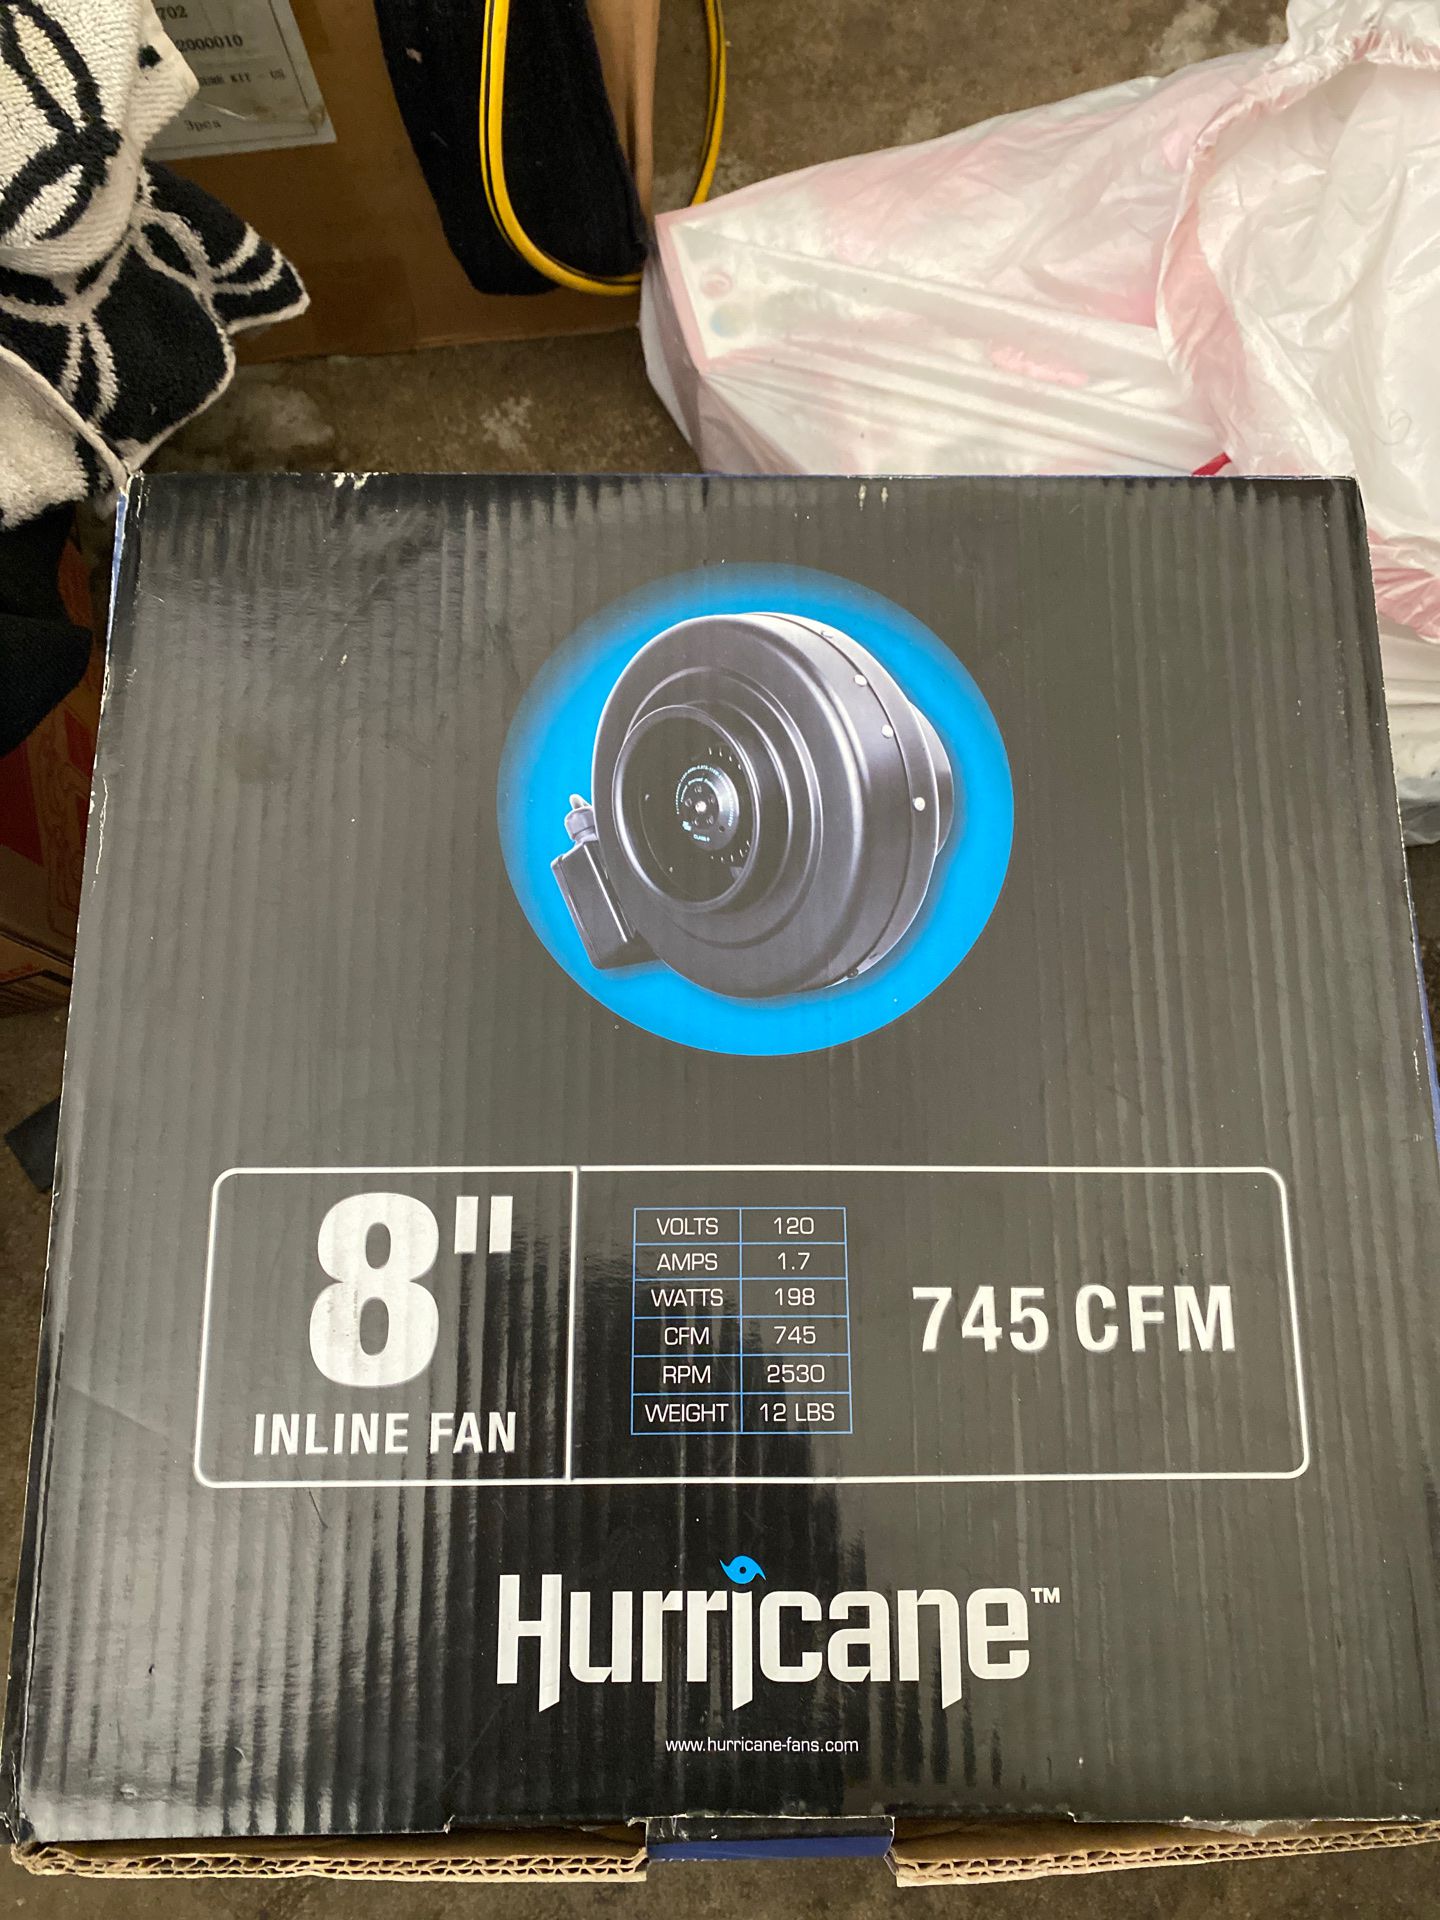 Hurricane 8” inline fan